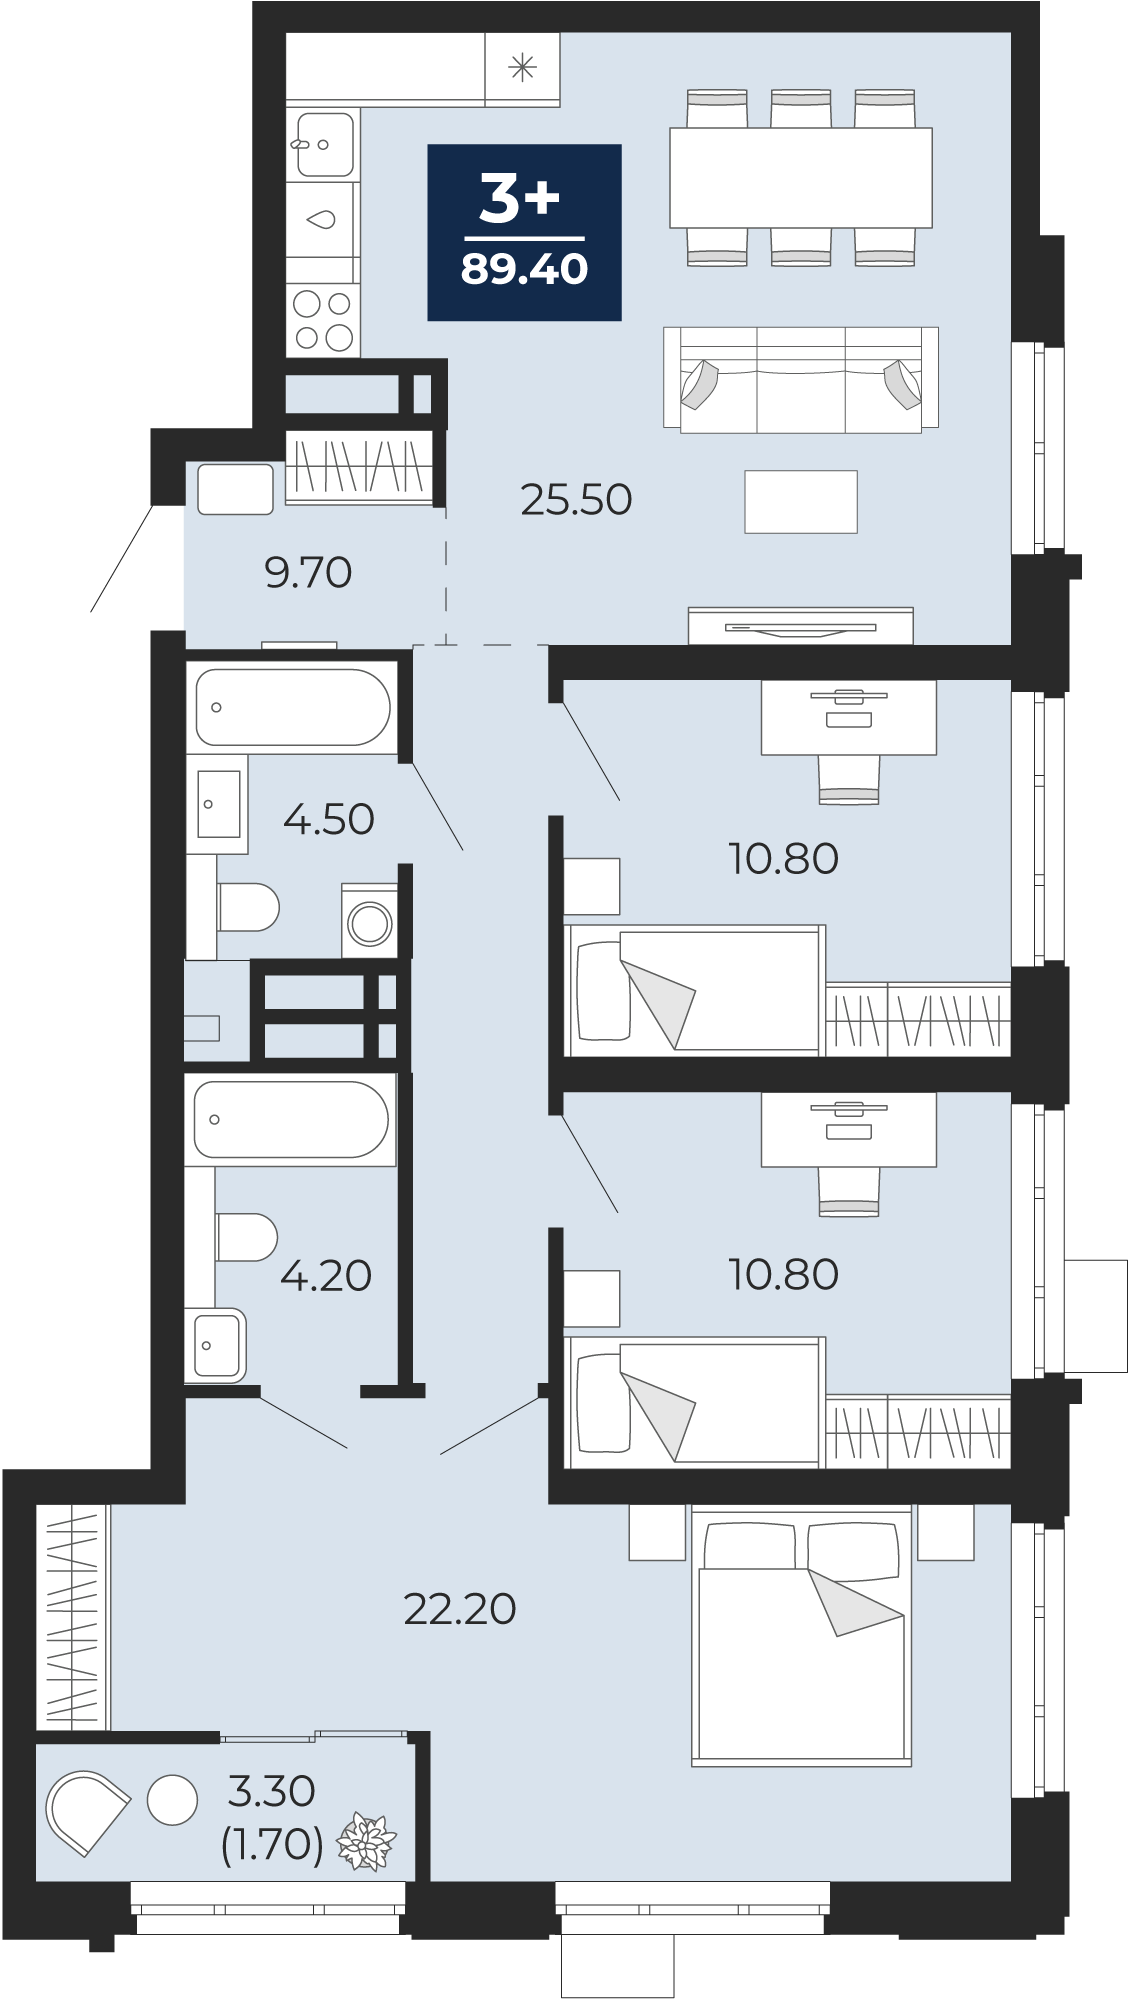 Квартира № 110, 3-комнатная, 89.4 кв. м, 4 этаж